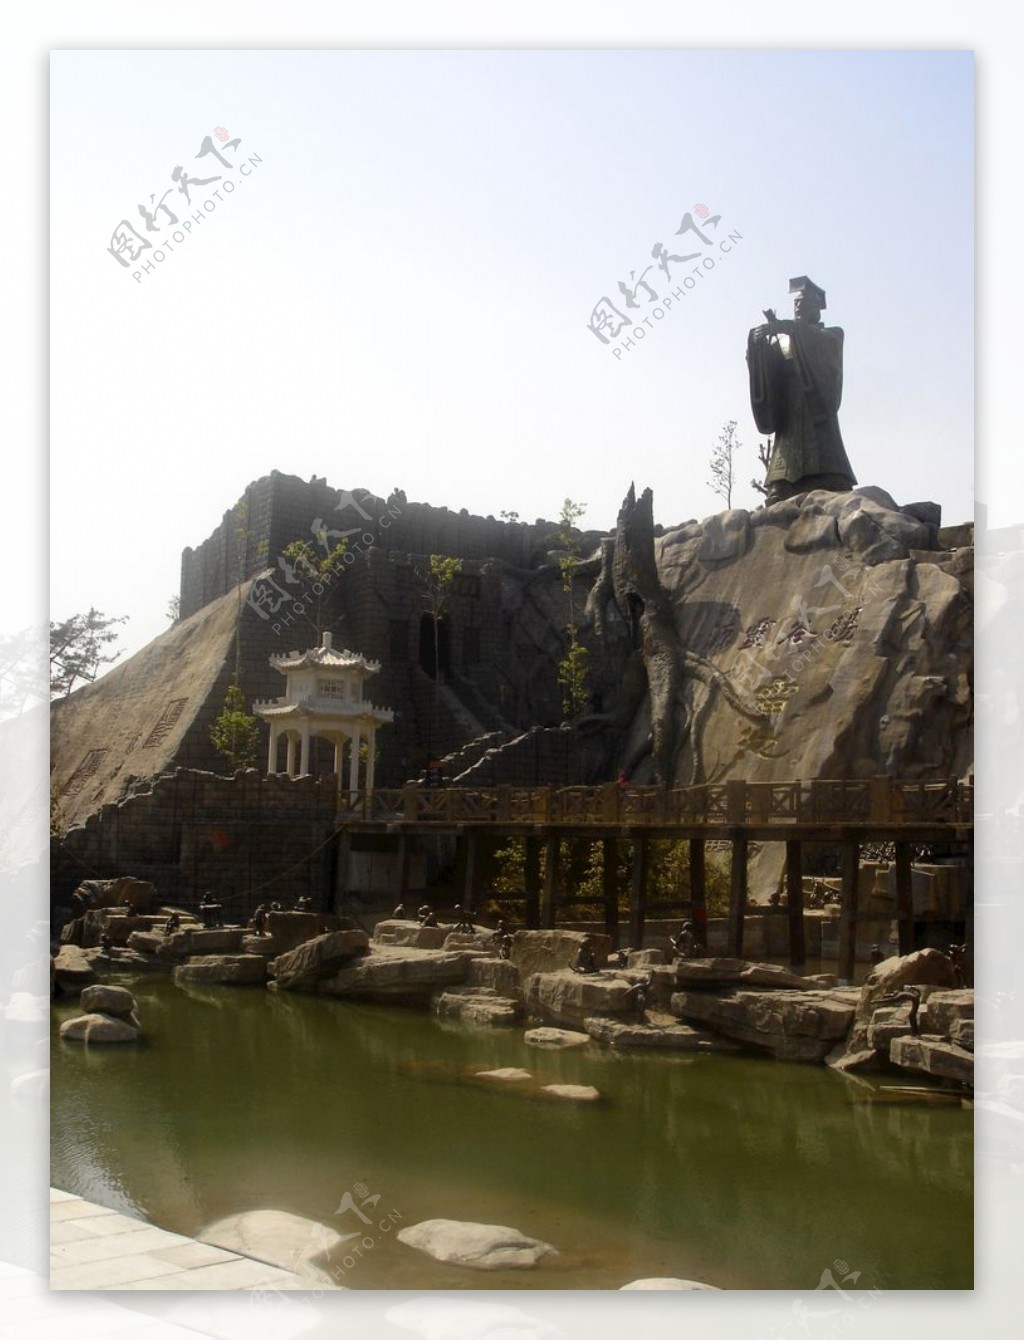 太湖文博园铜人像拍摄于雷池